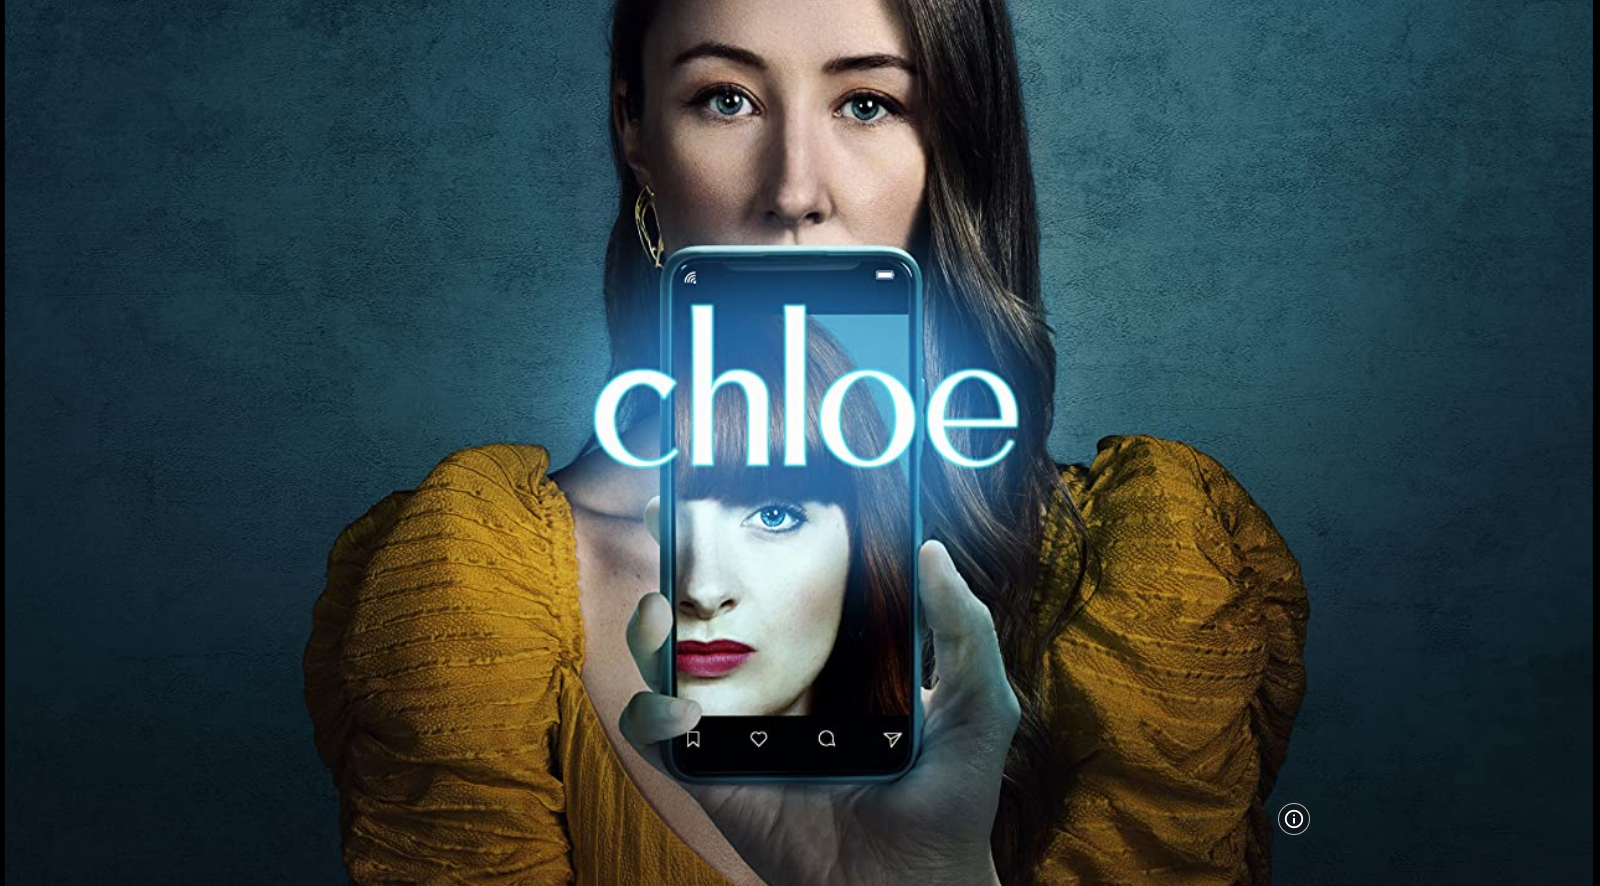 Chloe S01E01 HLG 2160p WEB H265